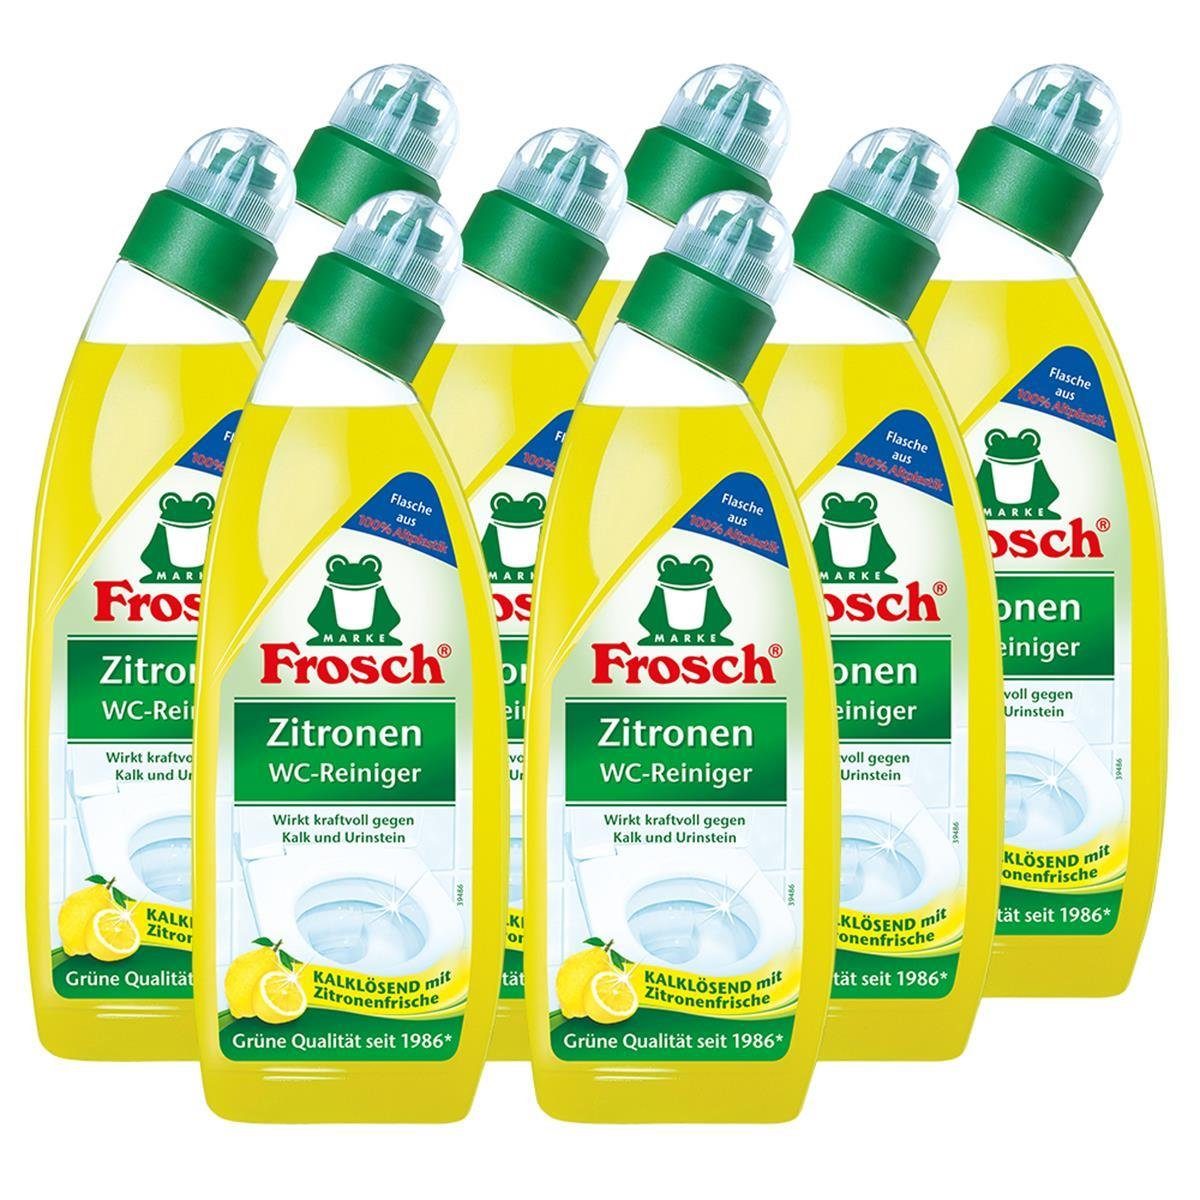 FROSCH 8x Frosch Zitronen WC-Reiniger 750 ml – Kalklösend mit Zitrone WC-Reiniger